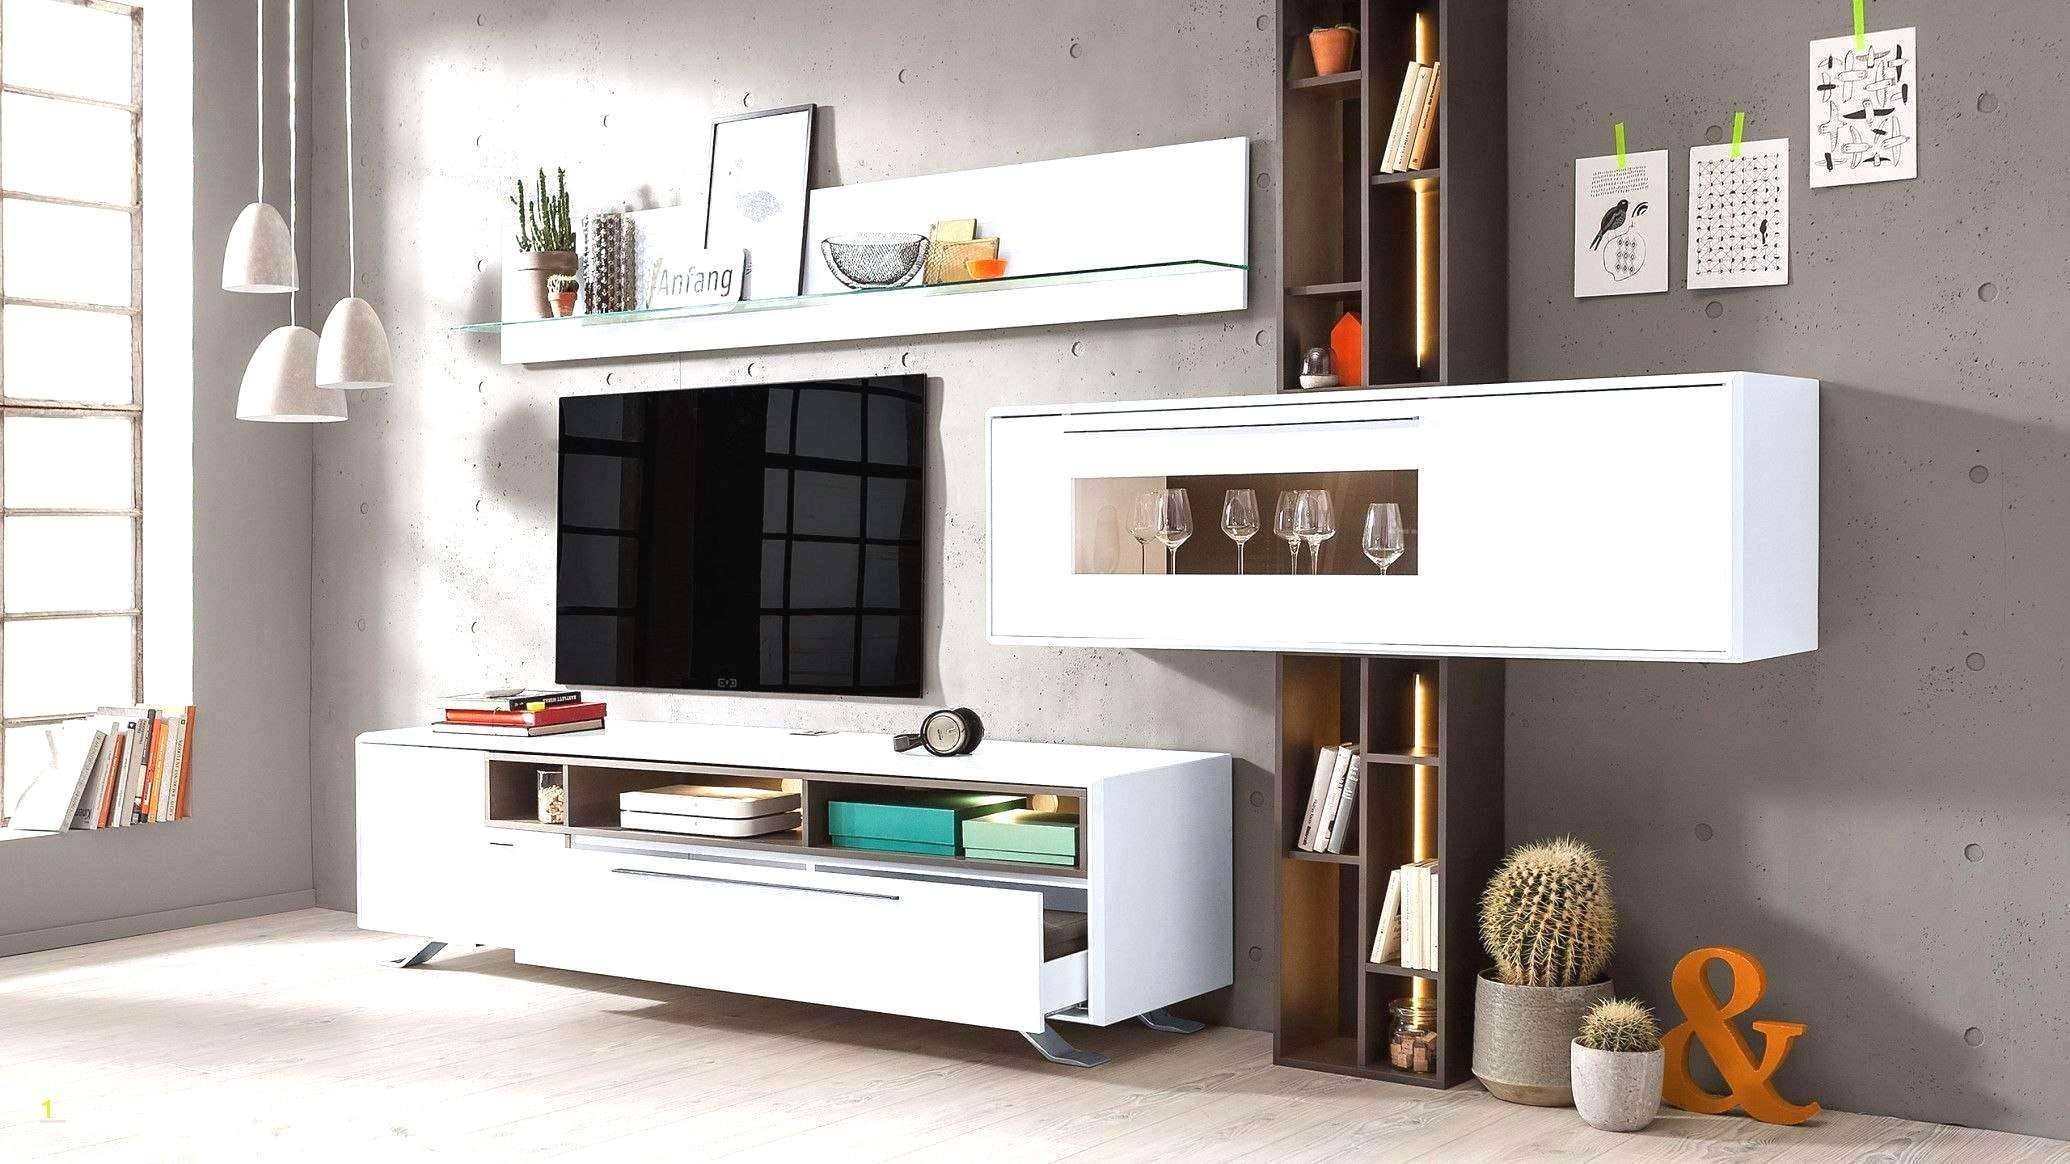 Deko Zum Selbermachen Einzigartig Luxury Deko Ideen Selbermachen Wohnzimmer Concept